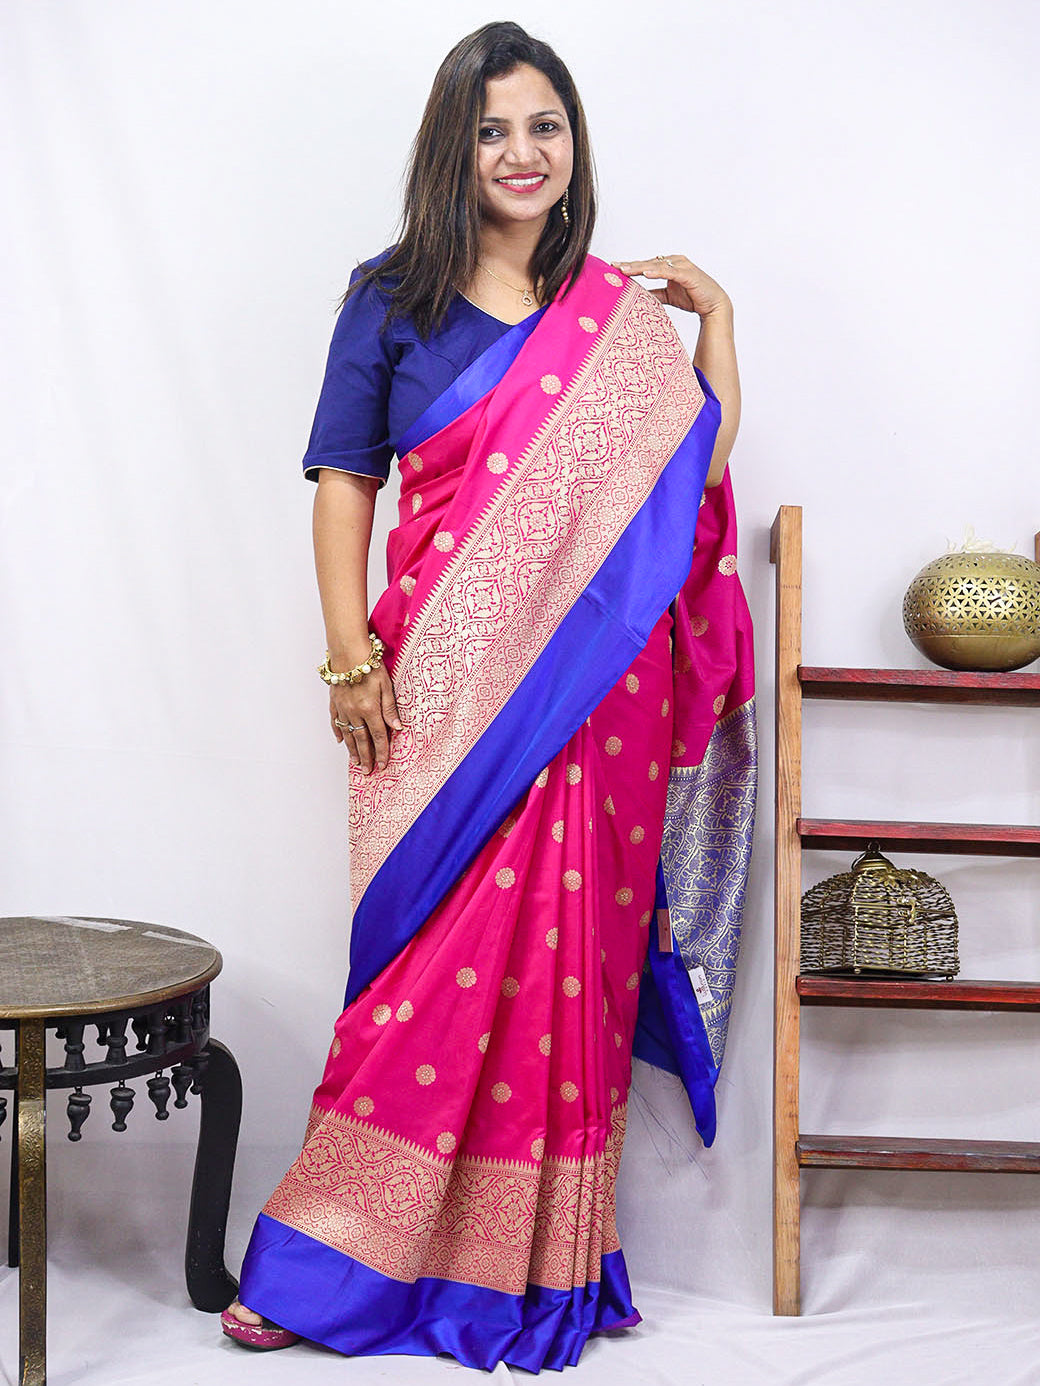 Shop Now: Pink Handloom Banarasi Soft Silk Saree with Contrast Border ...